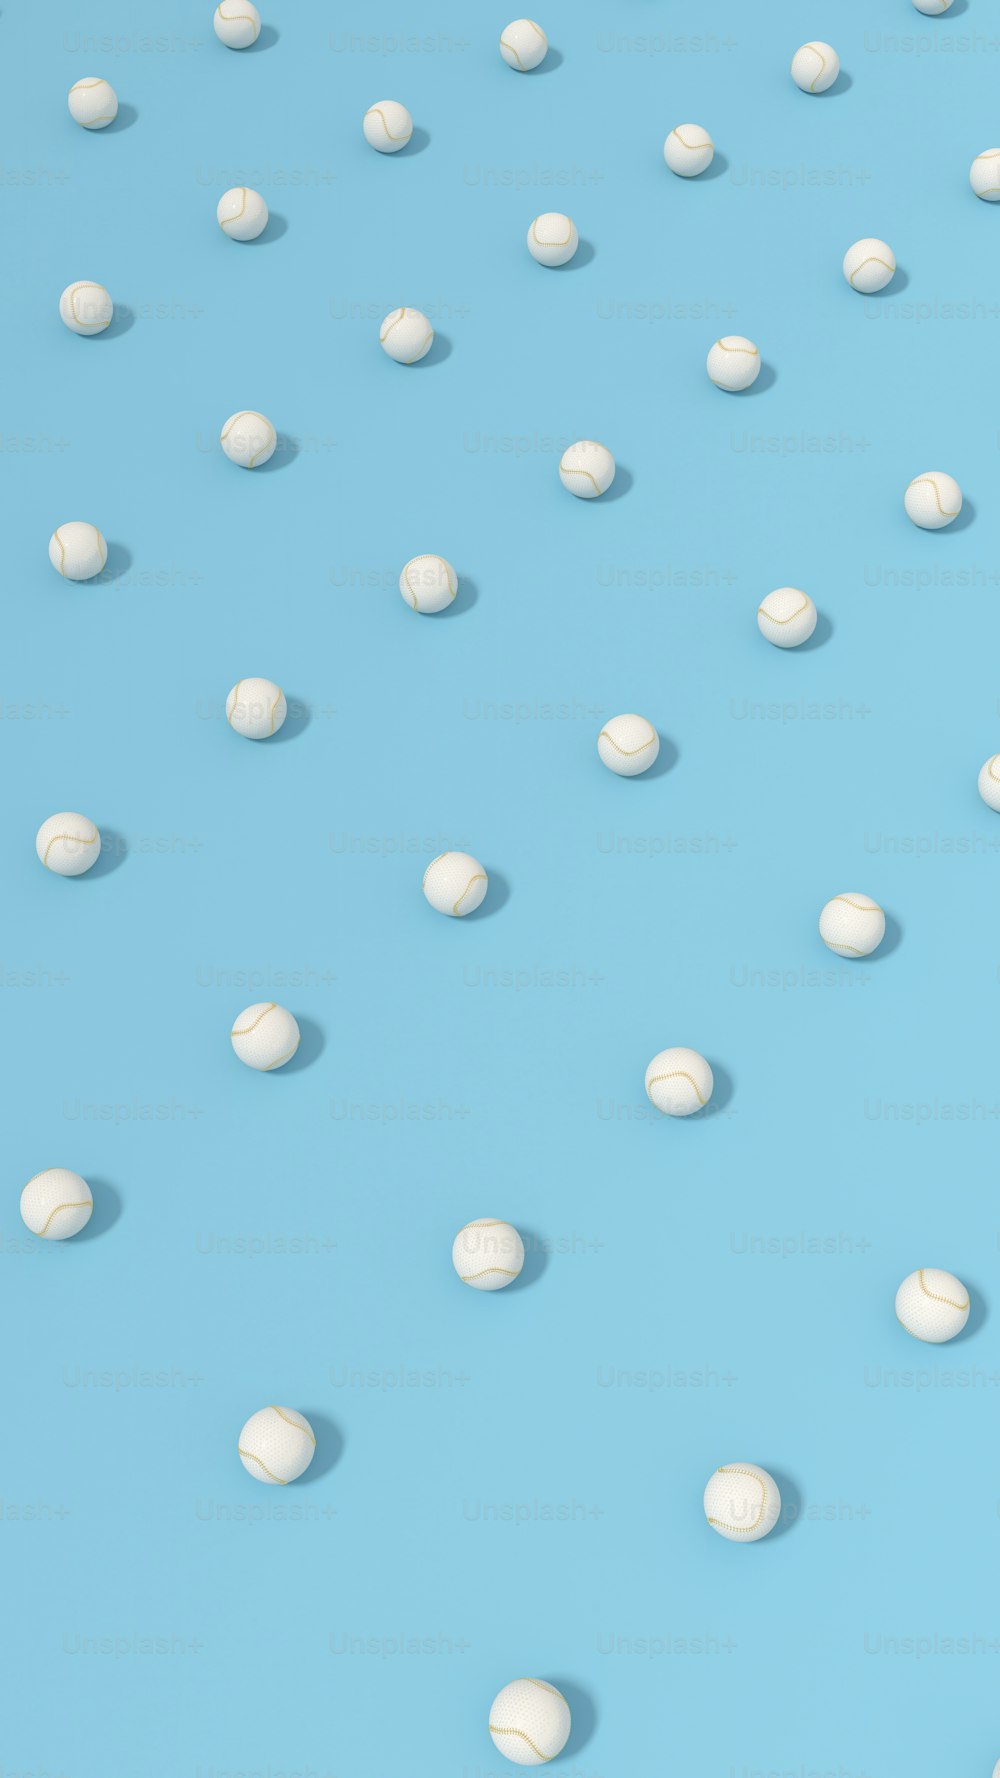 muchas píldoras blancas sobre una superficie azul